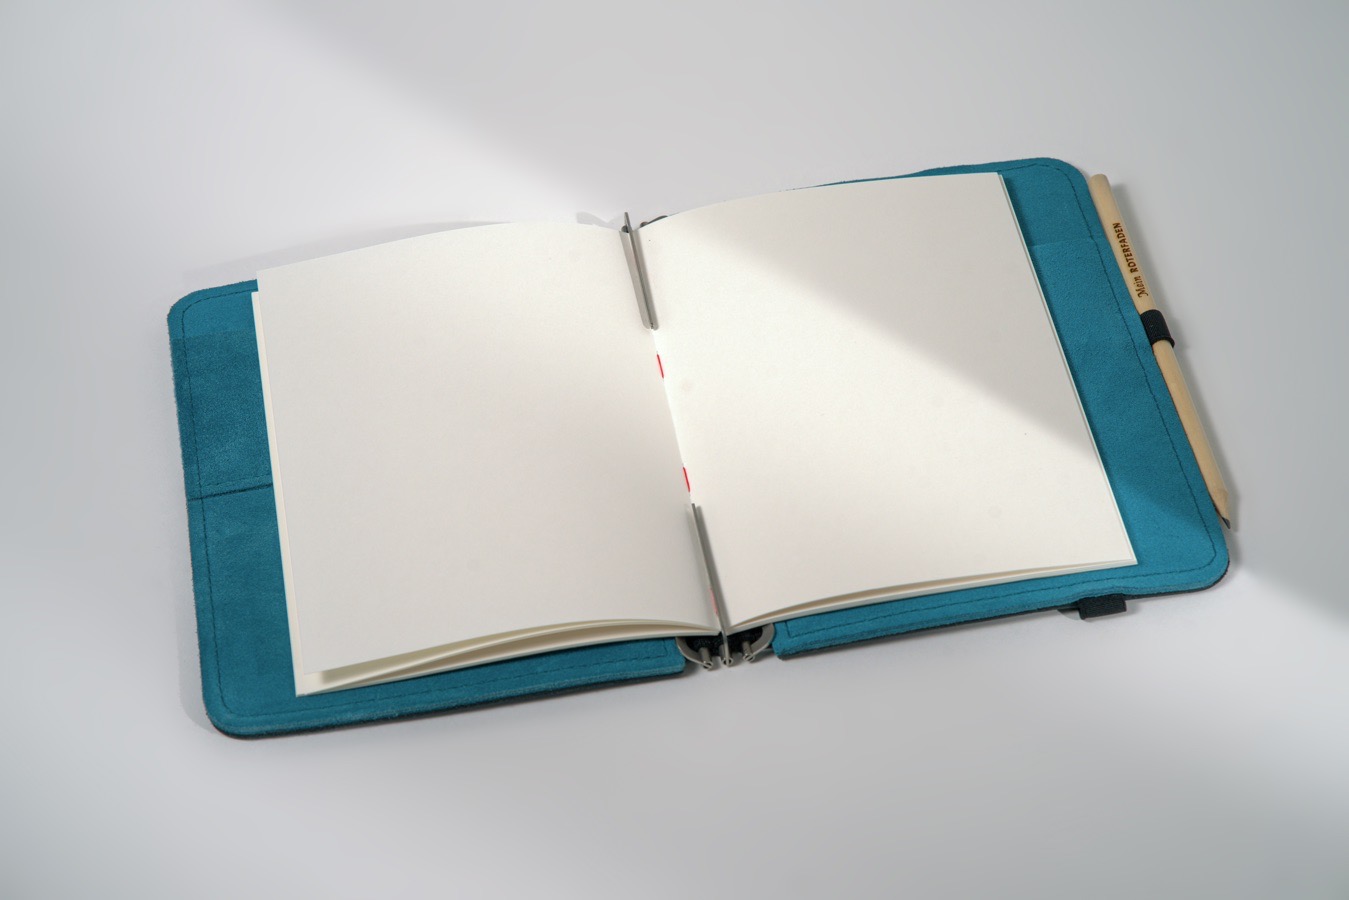 Fadengeheftetes Notizbuch mit festem Recyclingkarton-Einband, erhältlich in verschiedenen Größen, Punktraster und Blanko. Naturweißes Papier.